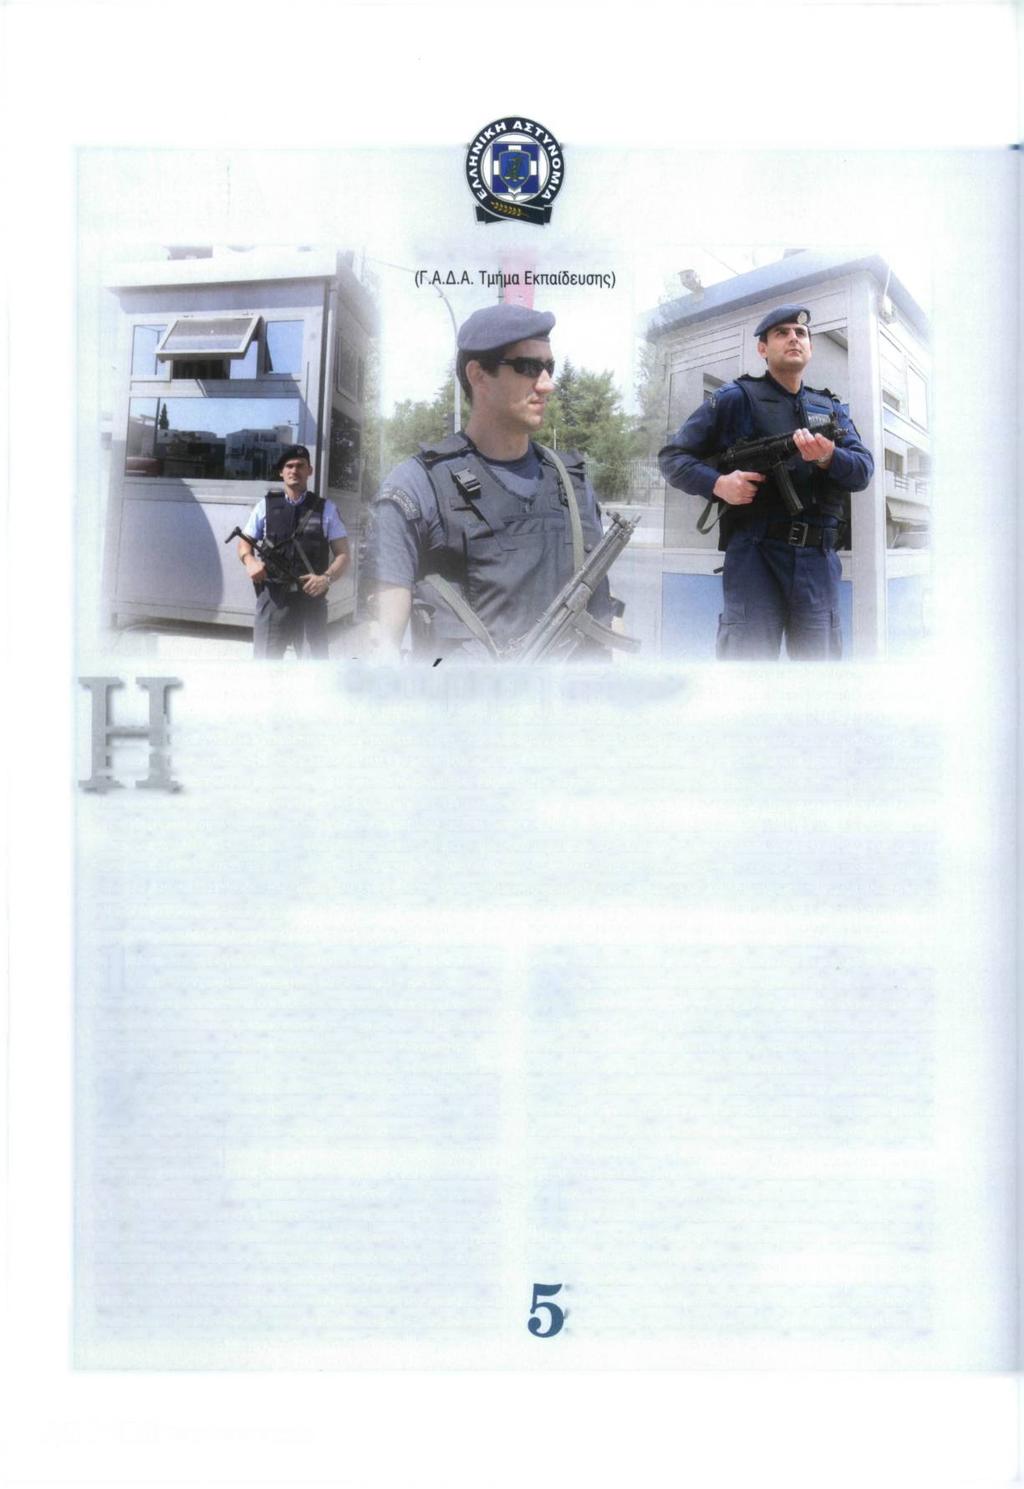 Του Α/Α' Ευάγγελου Μπαλάνου C Φρούρηση στόχων Η Ελληνική Αστυνομία, στο πλαίσιο της αποστολής της, είναι επιφορτισμένη και με το έργο της φρούρησης διαφόρων στόχων, στους οποίους περιλαμβάνονται τα